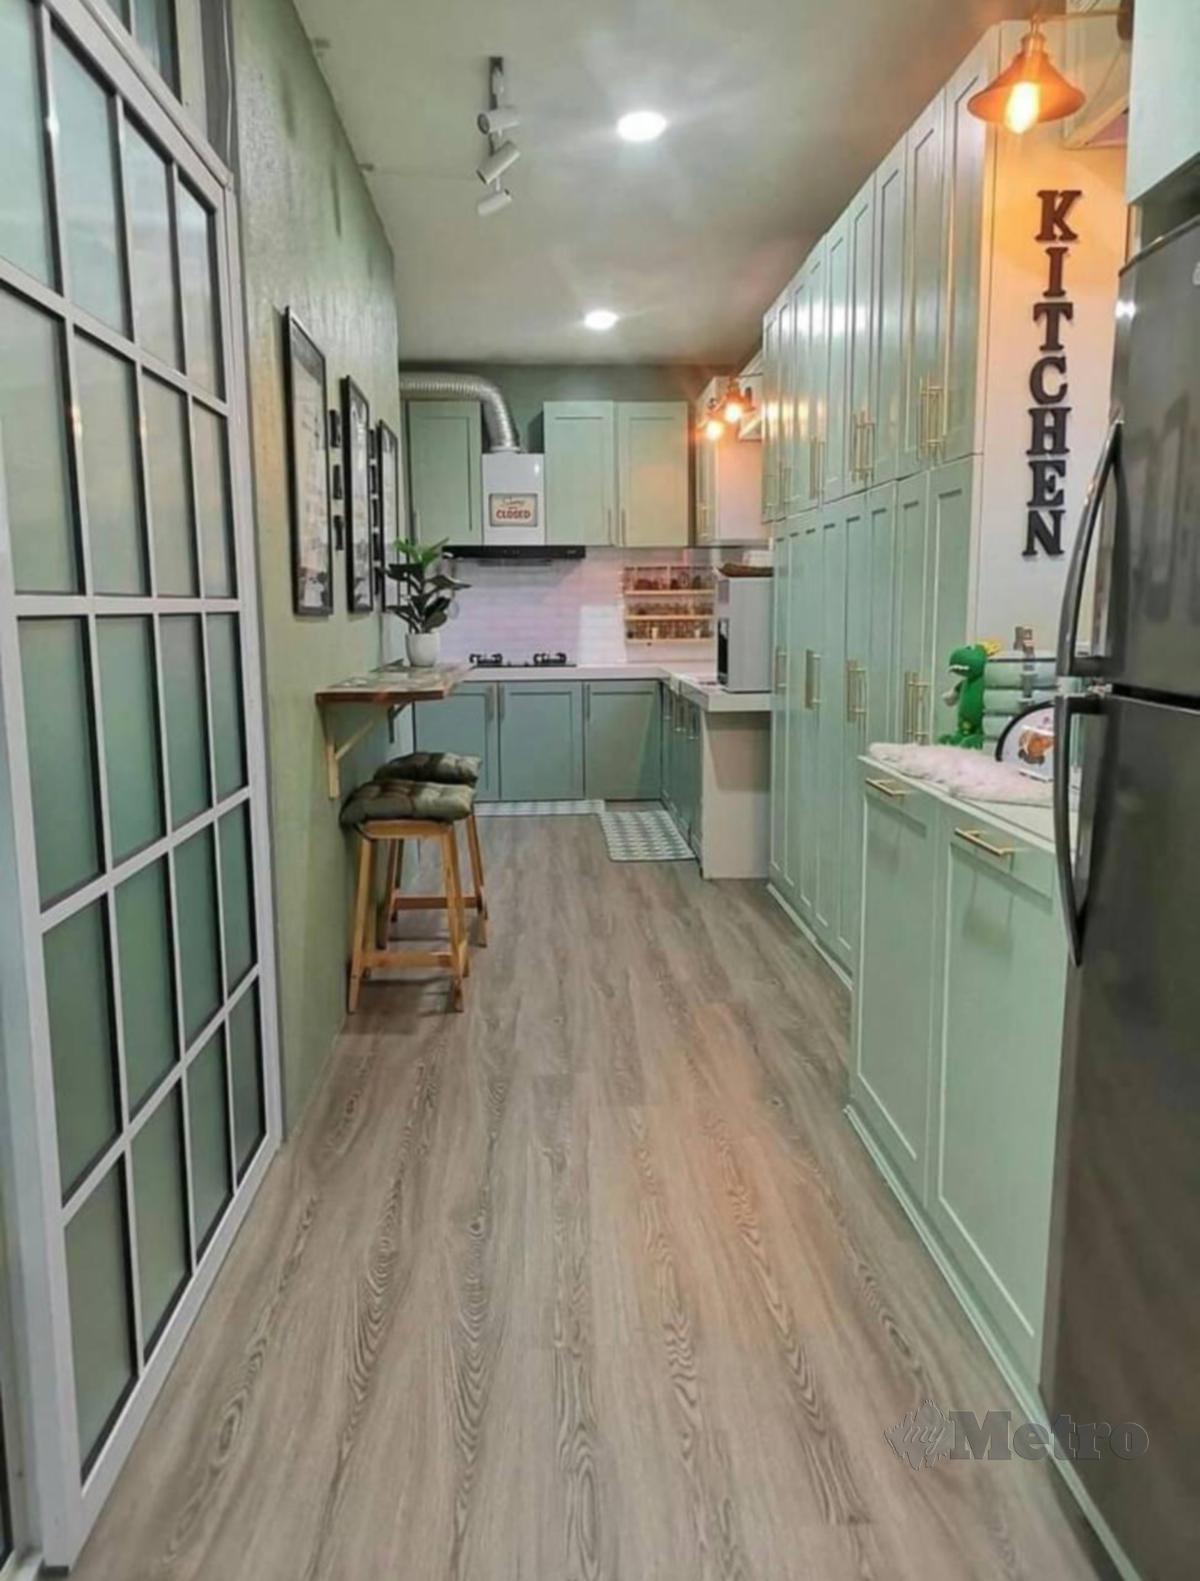 RUANG dapur tampak luas dengan rona hijau pastel dan putih.